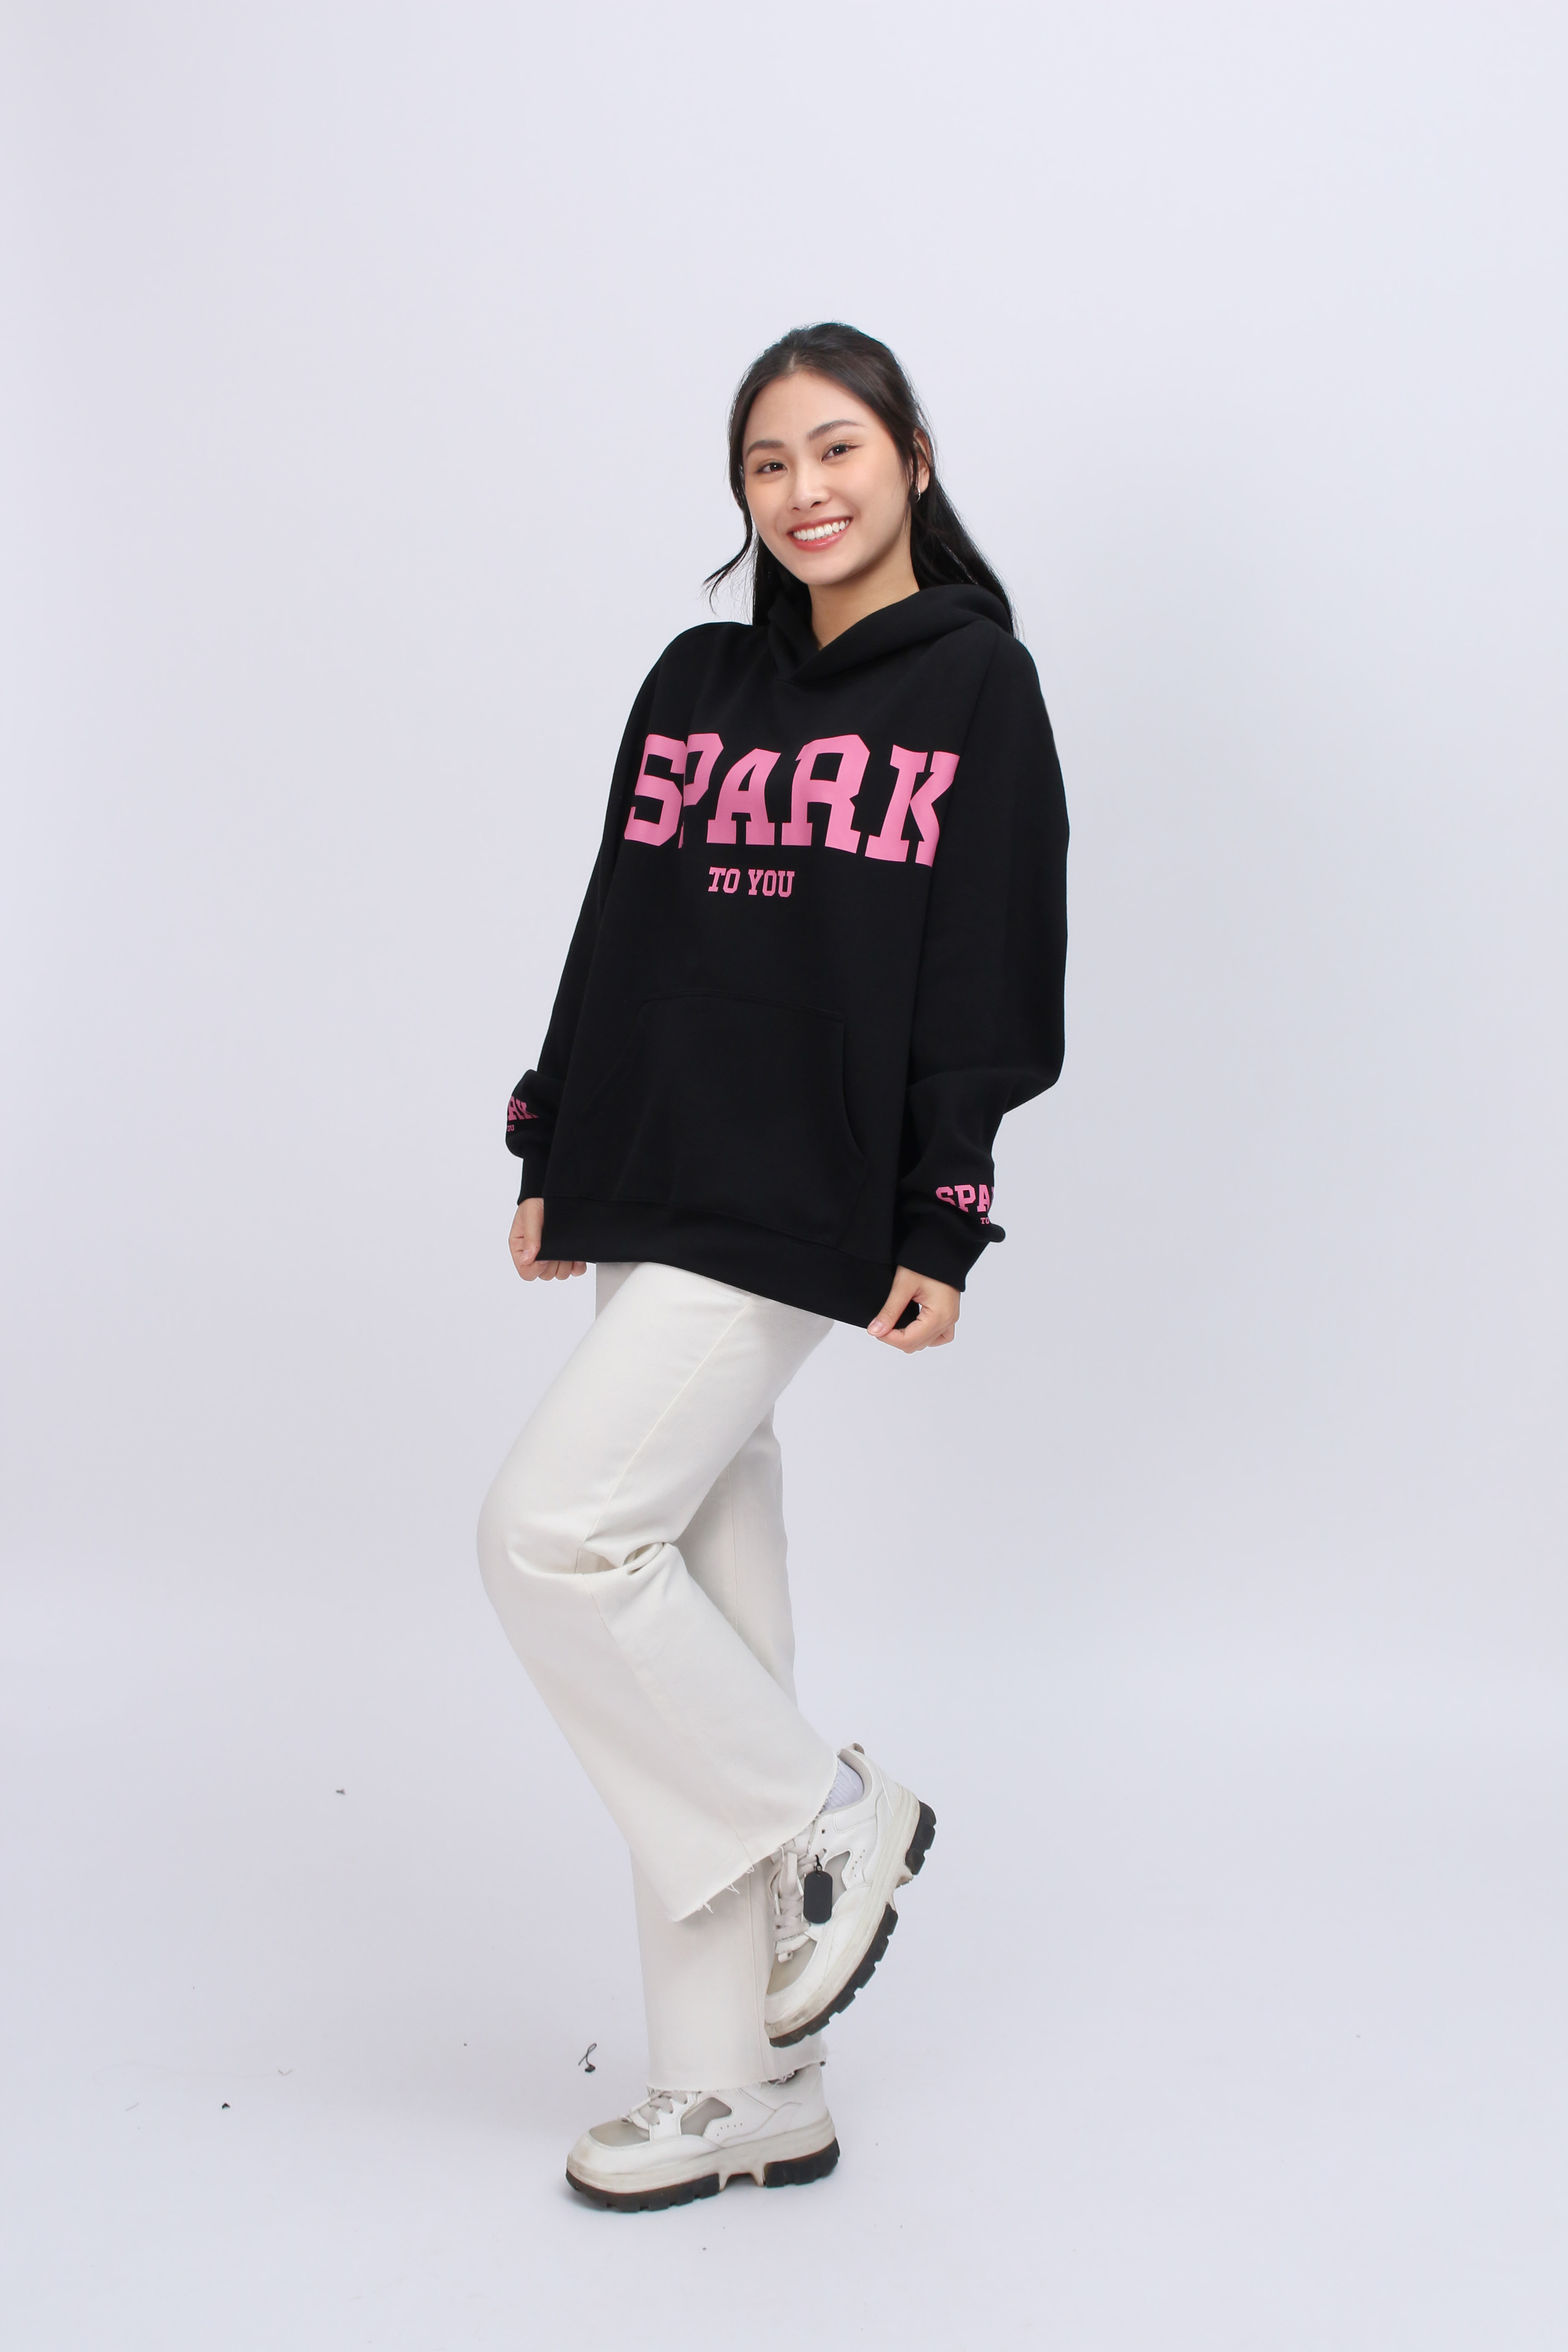 Áo hoodie nữ in chữ Spark 221ANU09